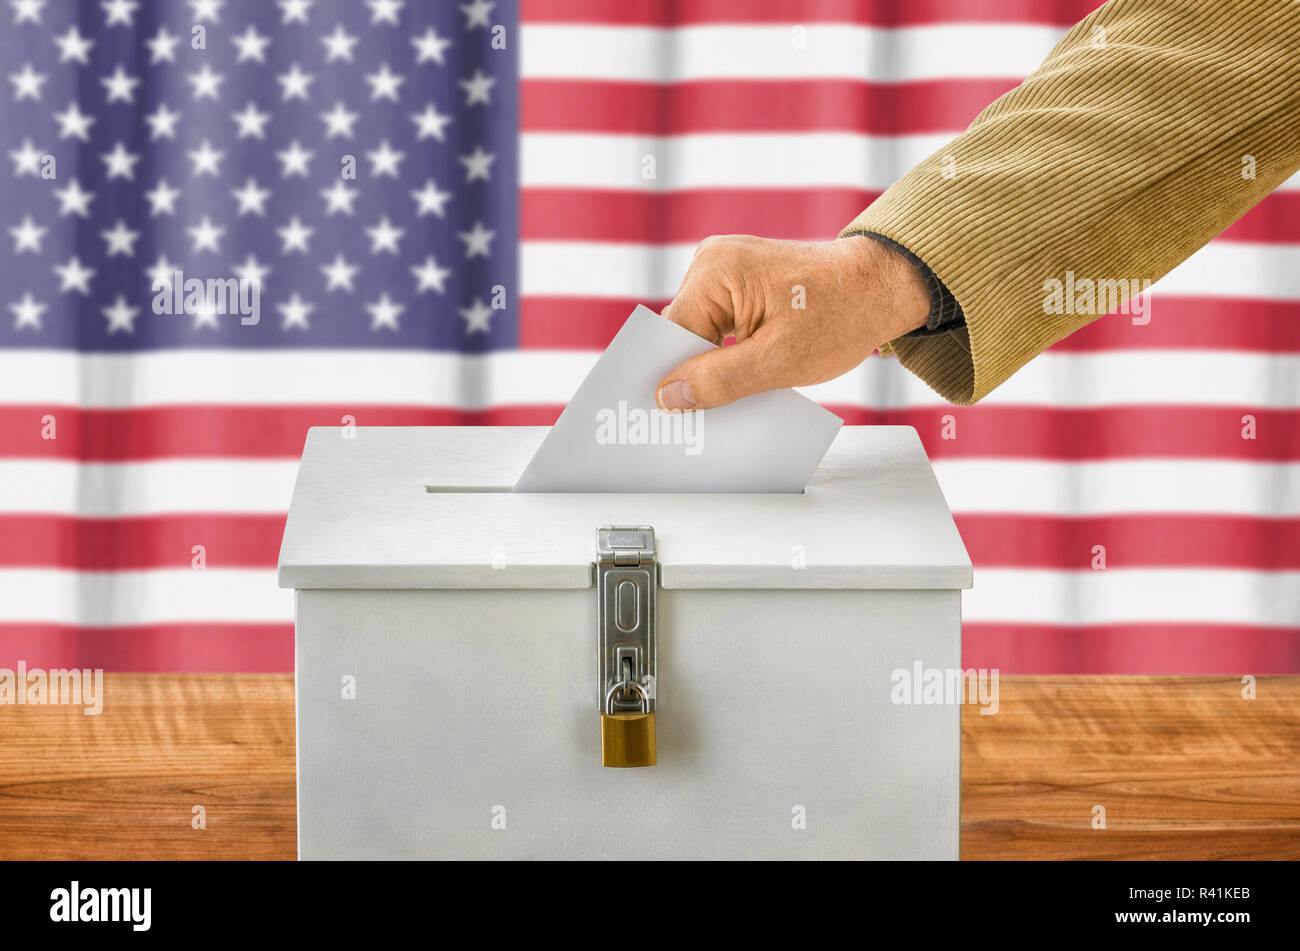 Mann wirft Stimmzettel in Urne - usa Stockfoto